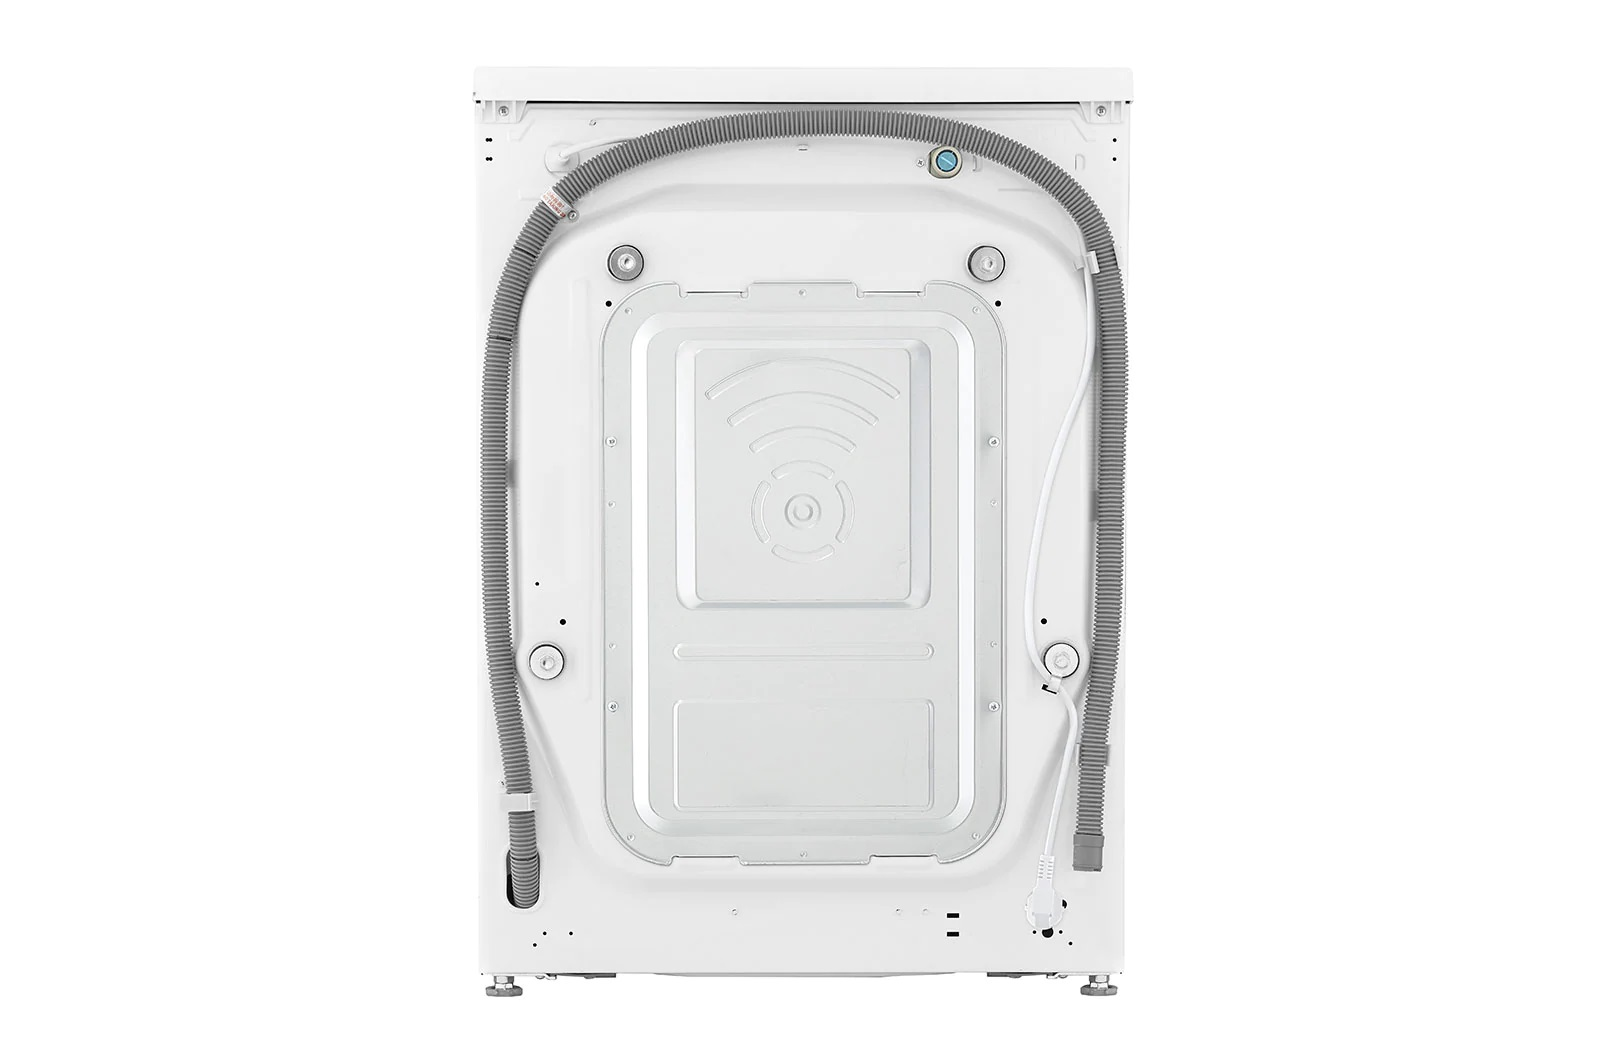 LG V5WD85SLIM  Waschtrockner 8kg Waschen 5 Kg Trocknen  1200 U/Min , Steam  ,Inverter Direct Drive, nur 47.5 cm tief